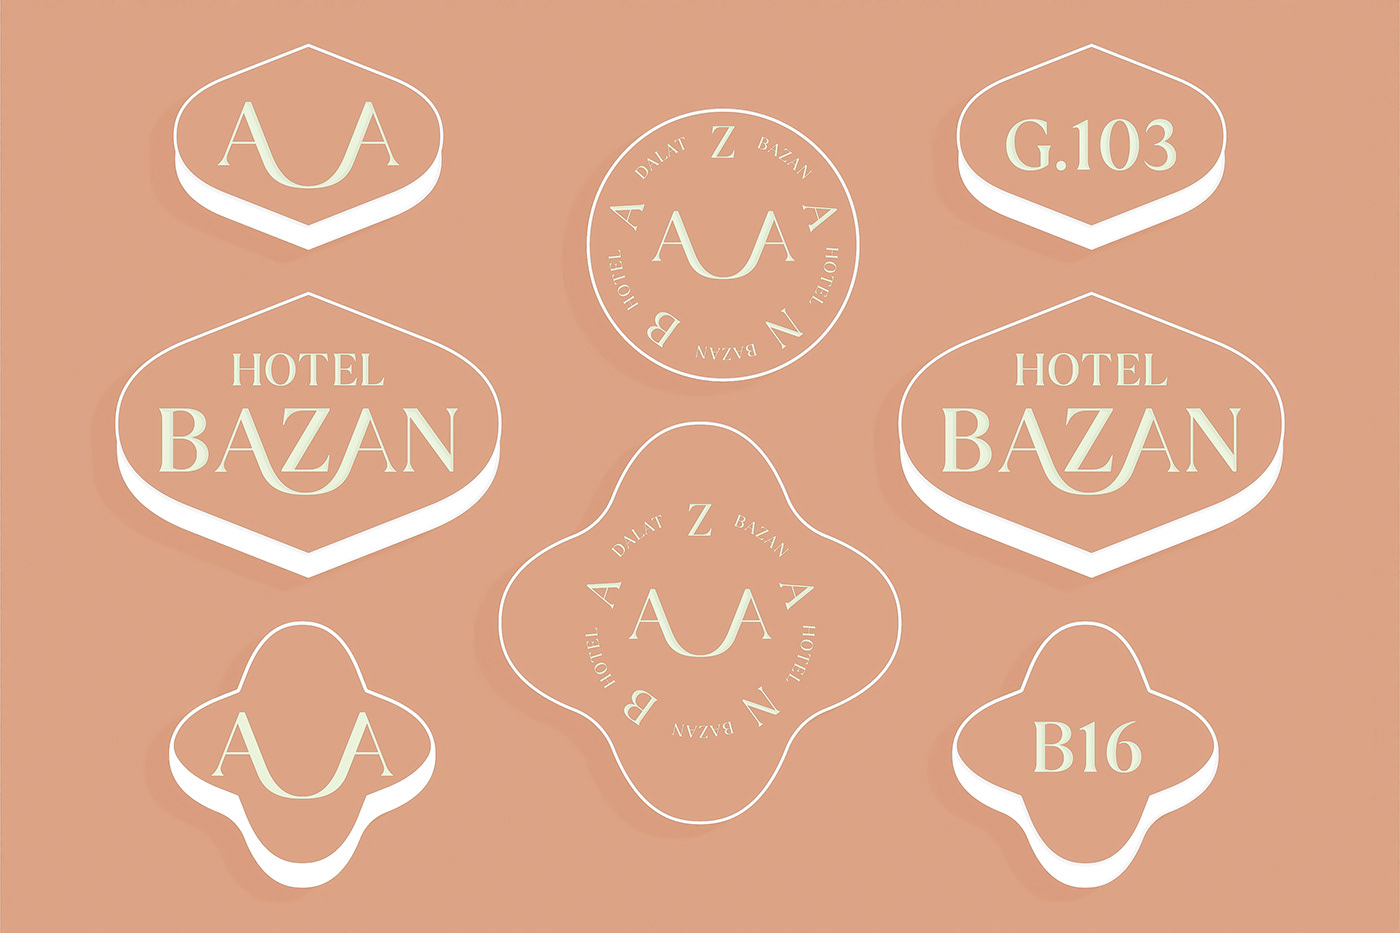 Dalat logo Travel brand identity visual identity hotel design vietnam